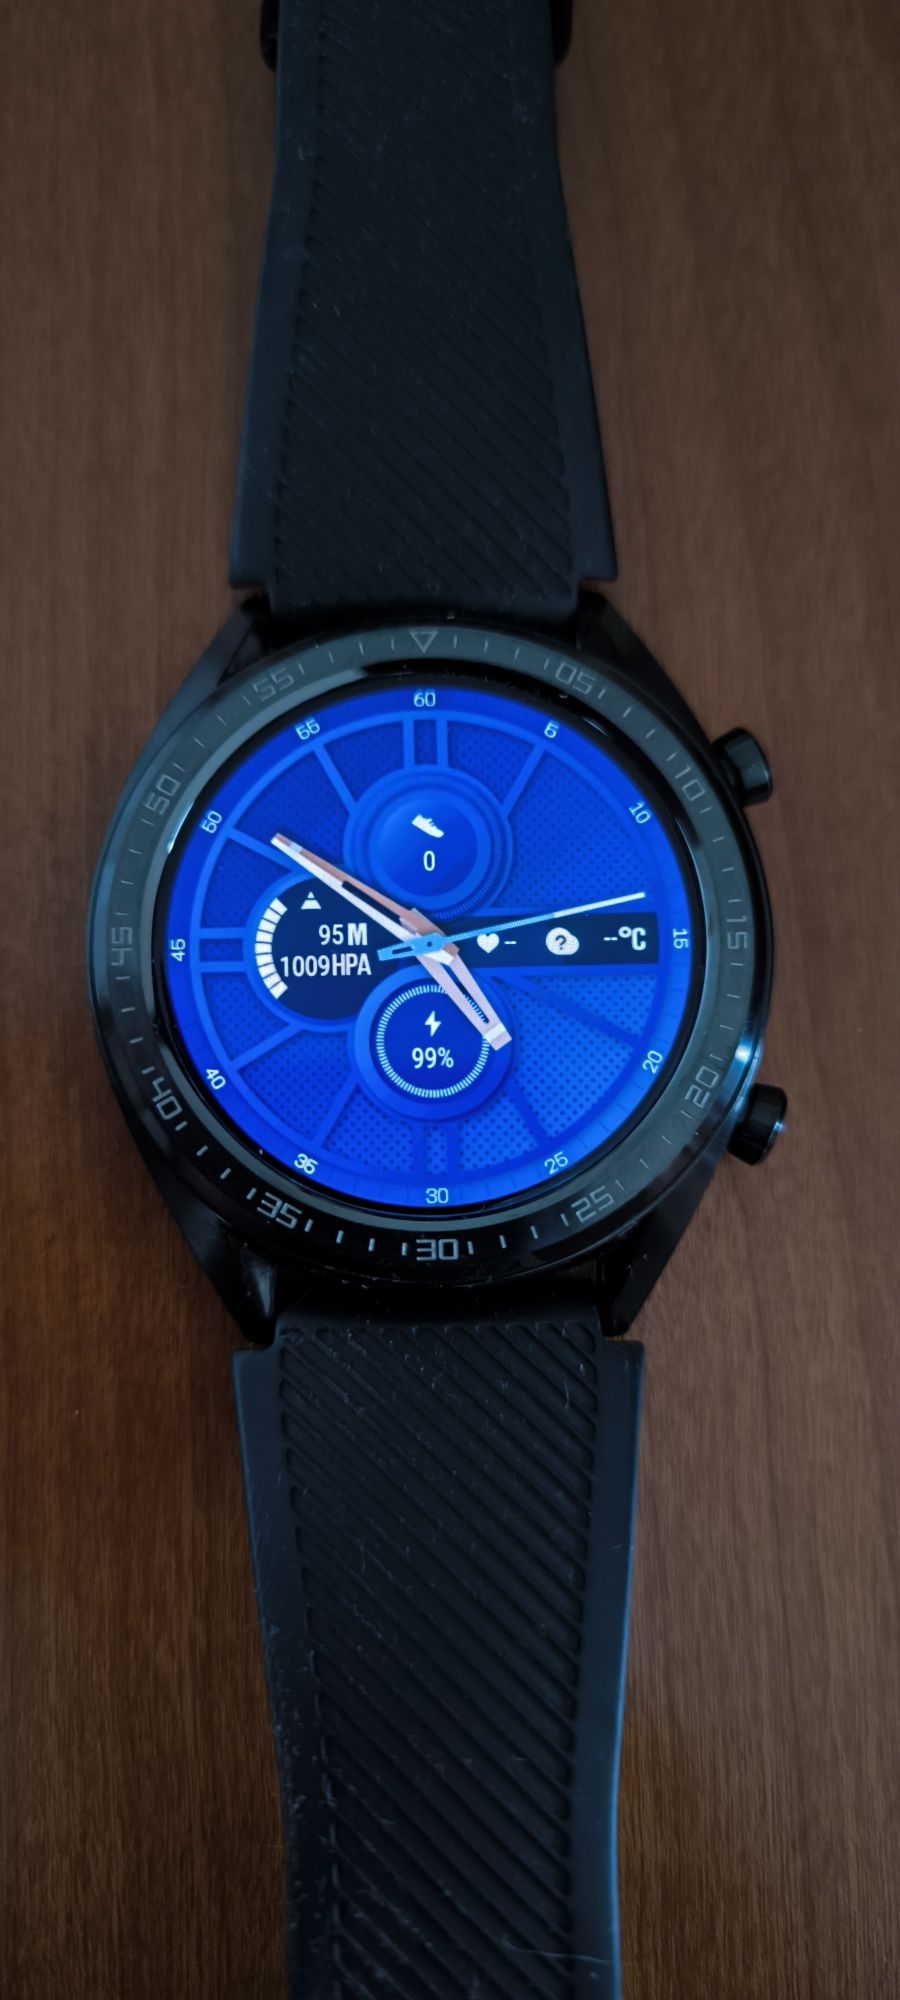 Huawei watch GT smartwatch